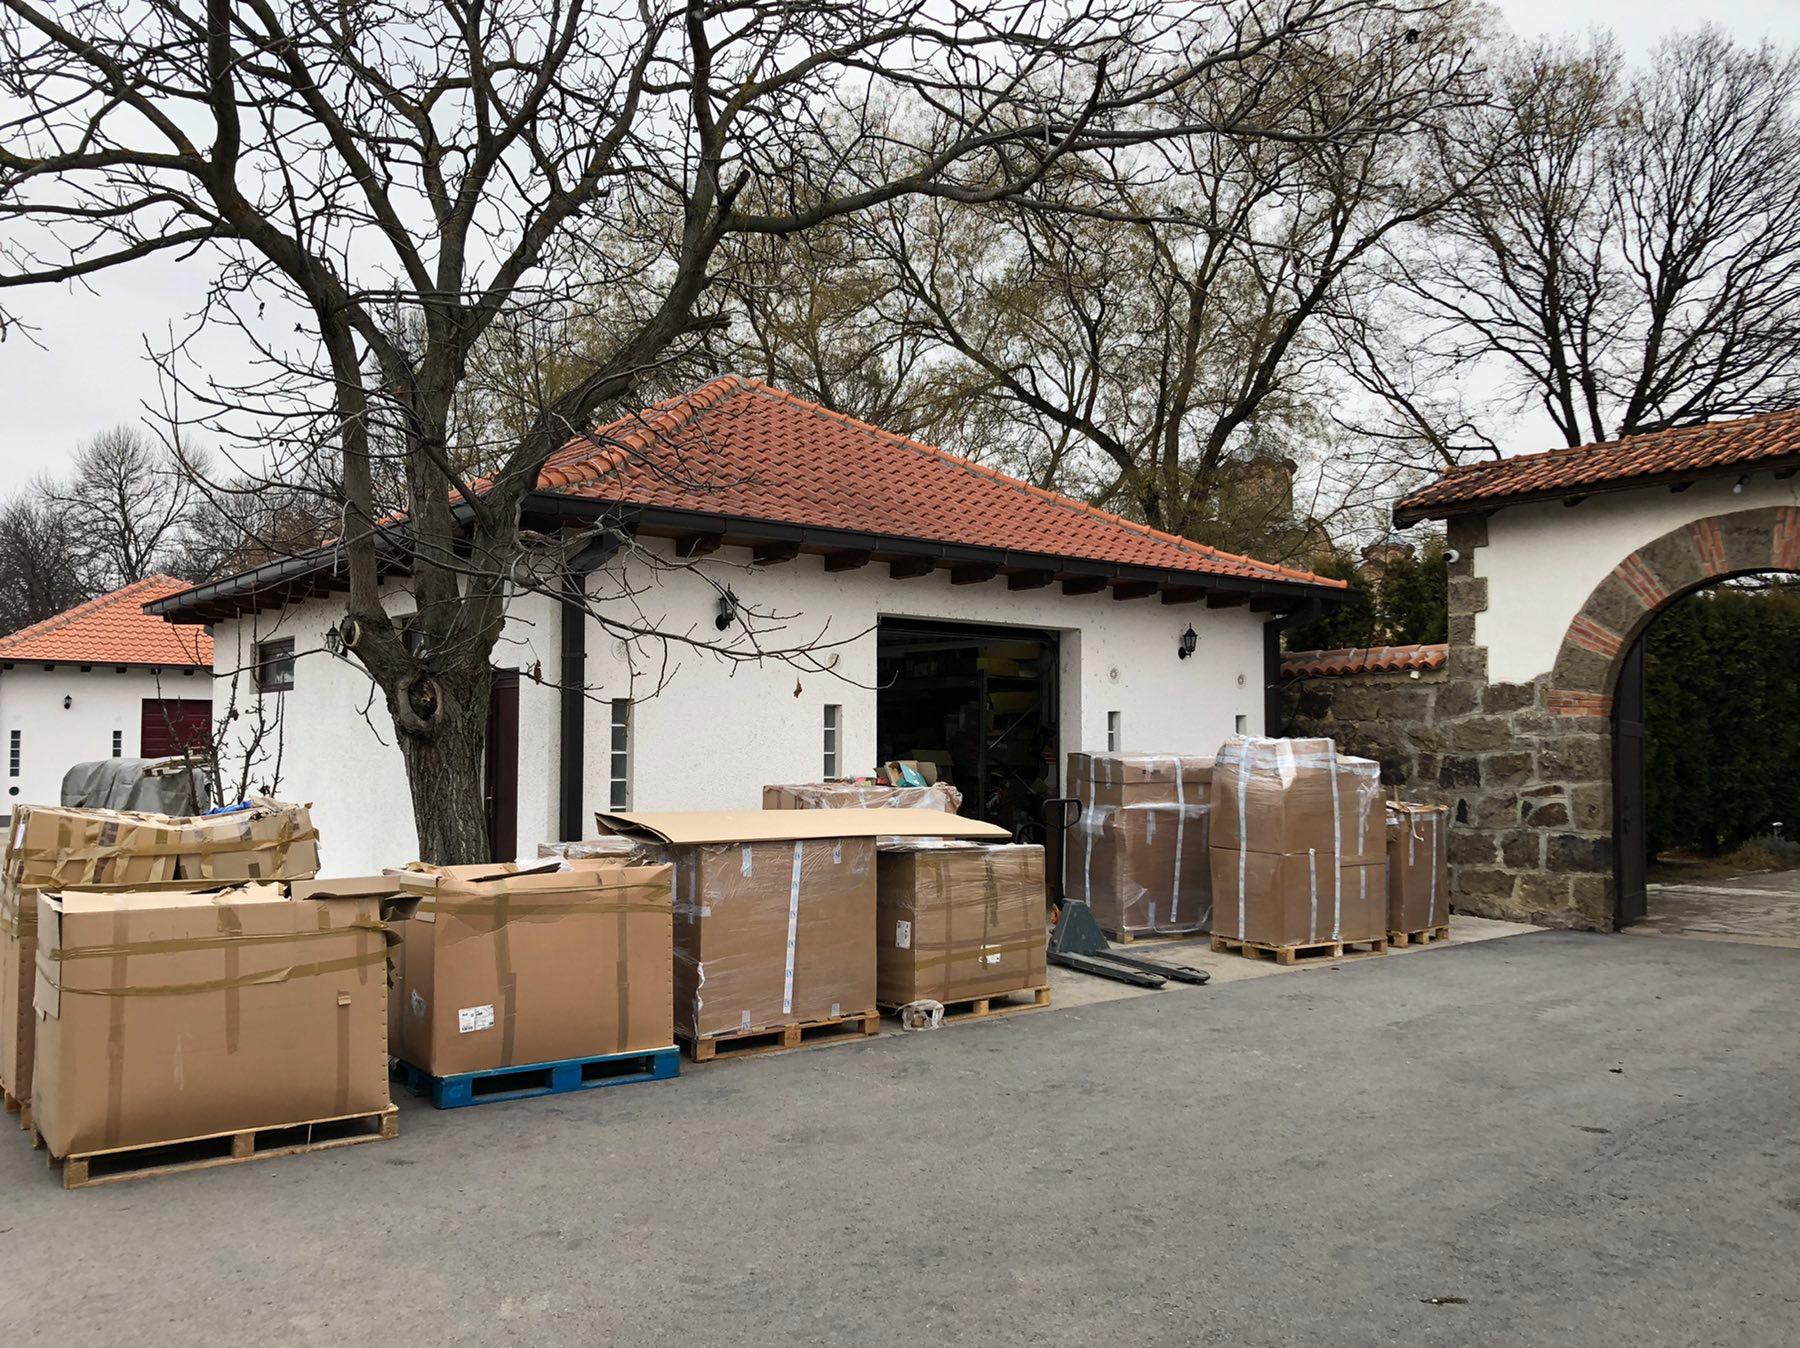 Le matériel pour le convoi de Noël déchargé au Kosovo